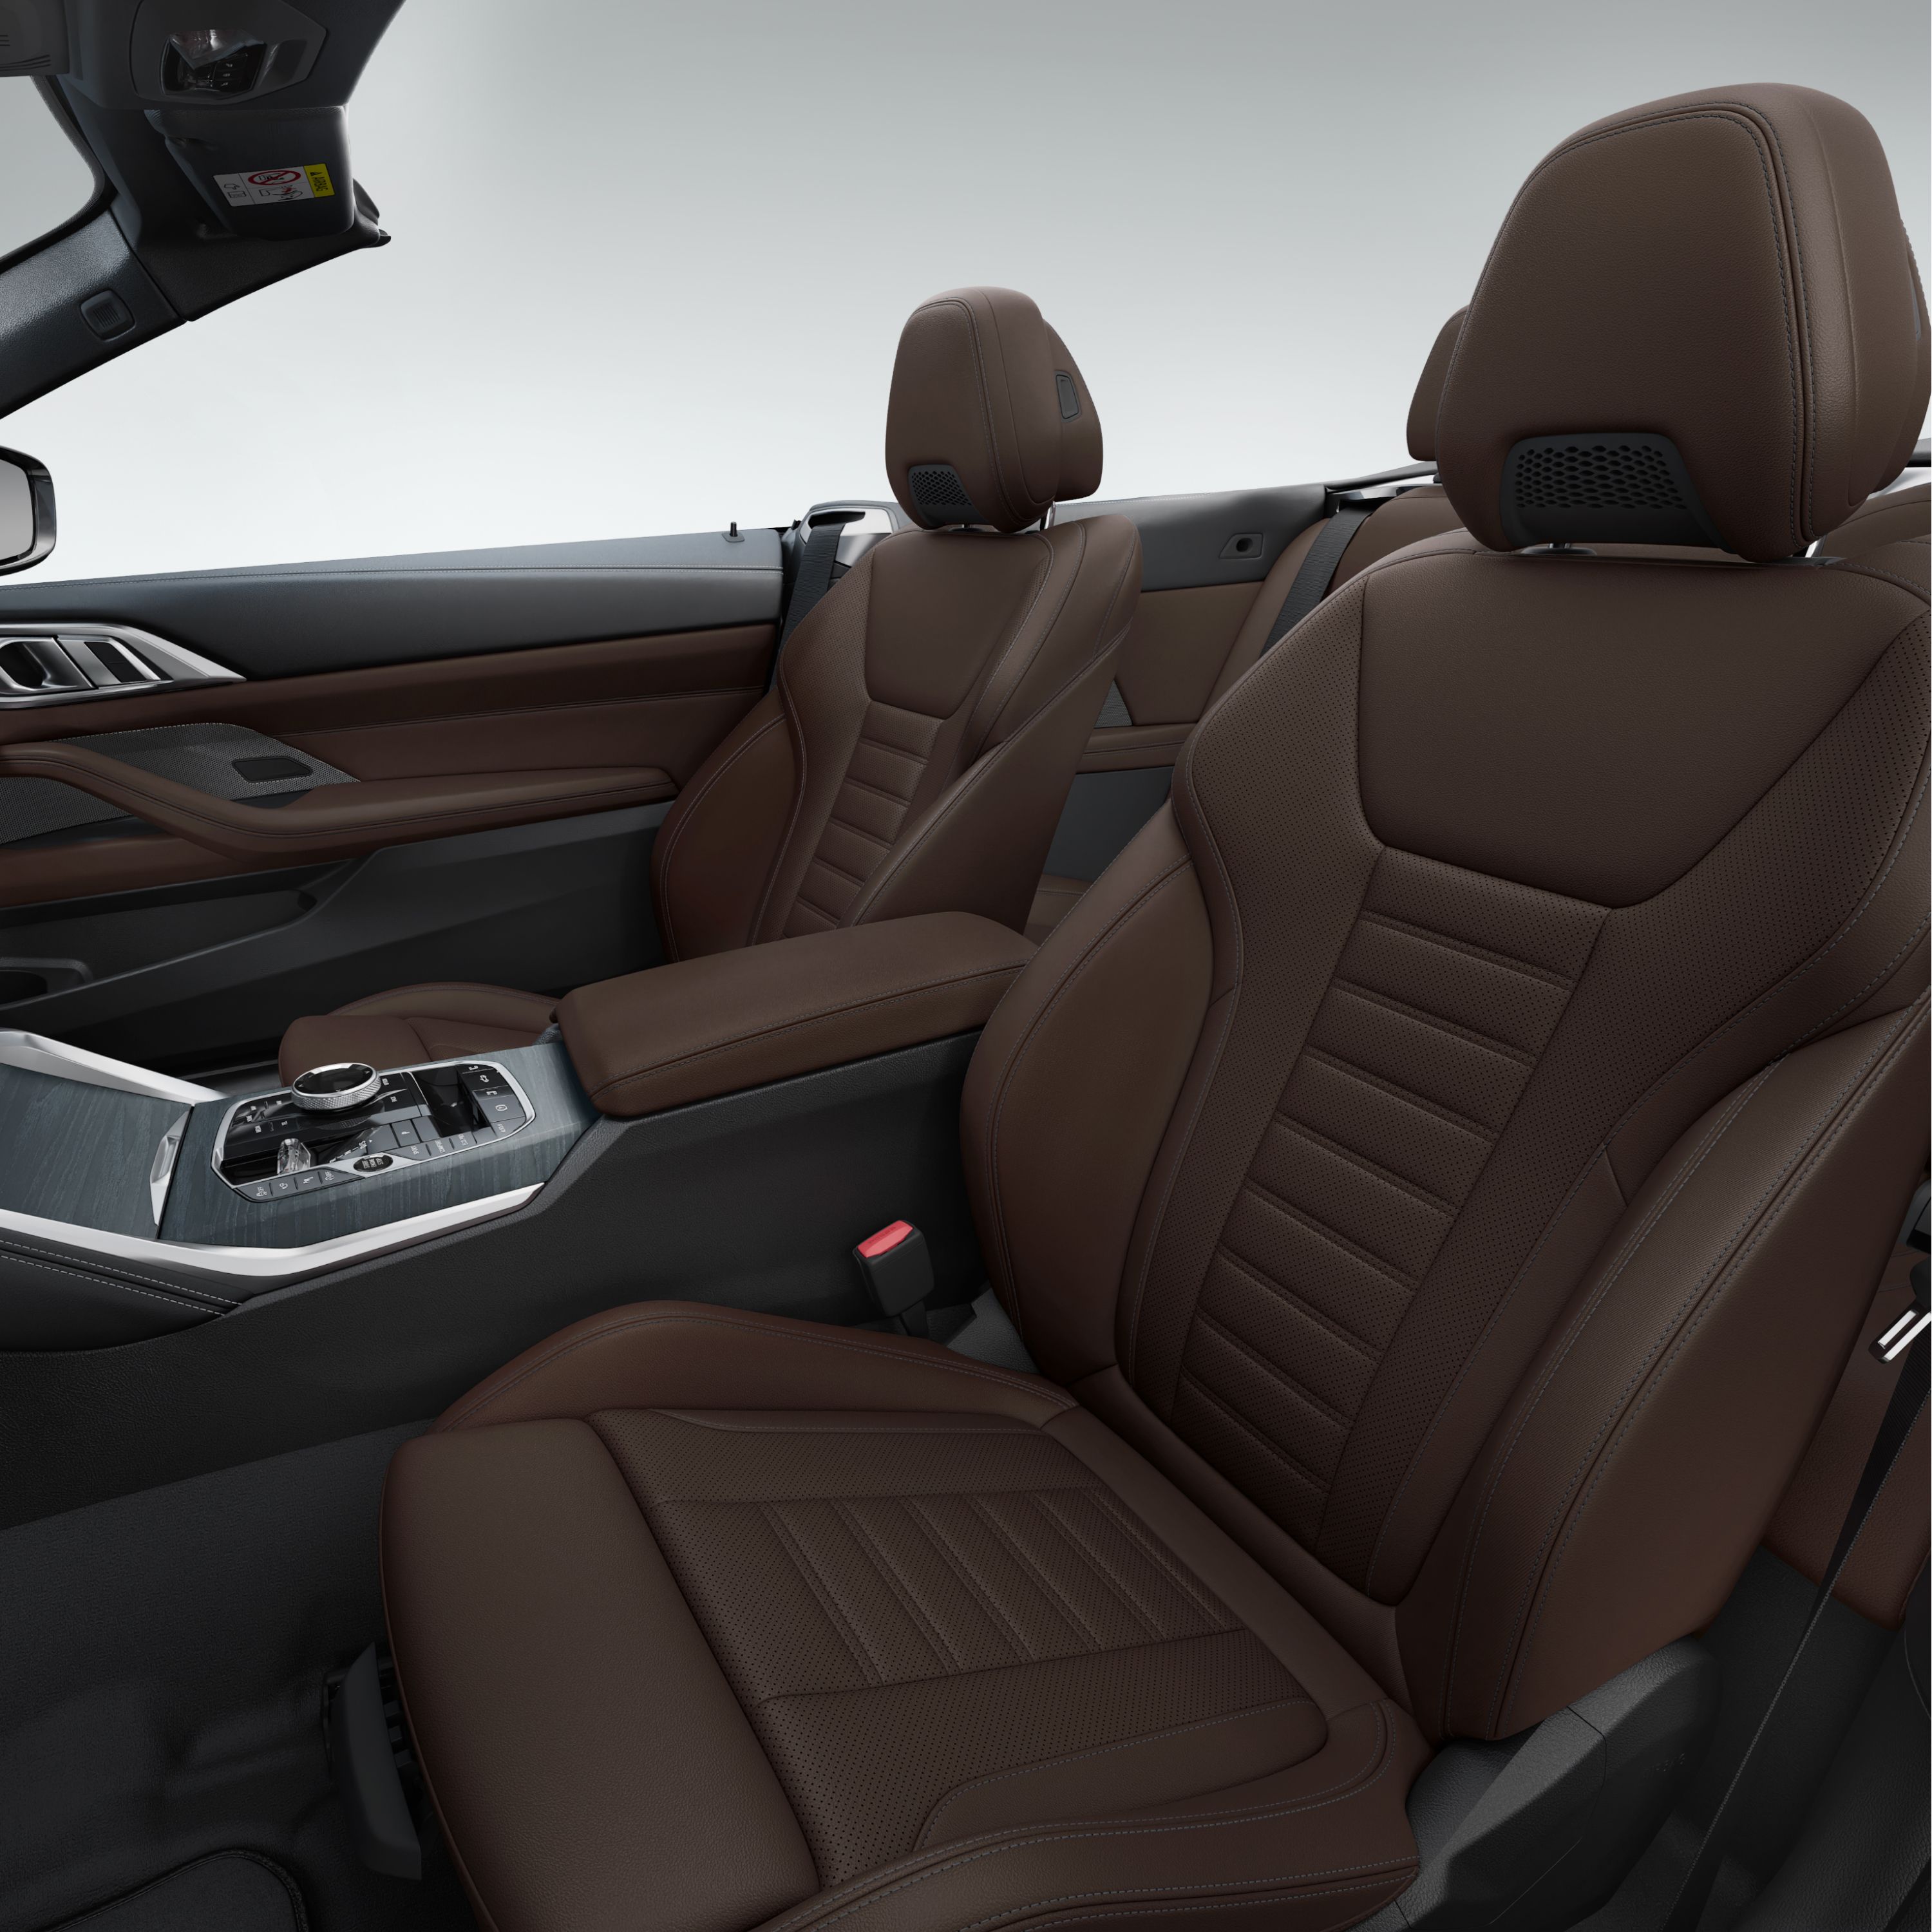 Nový design čalounění sedadel BMW řady 4 Cabrio